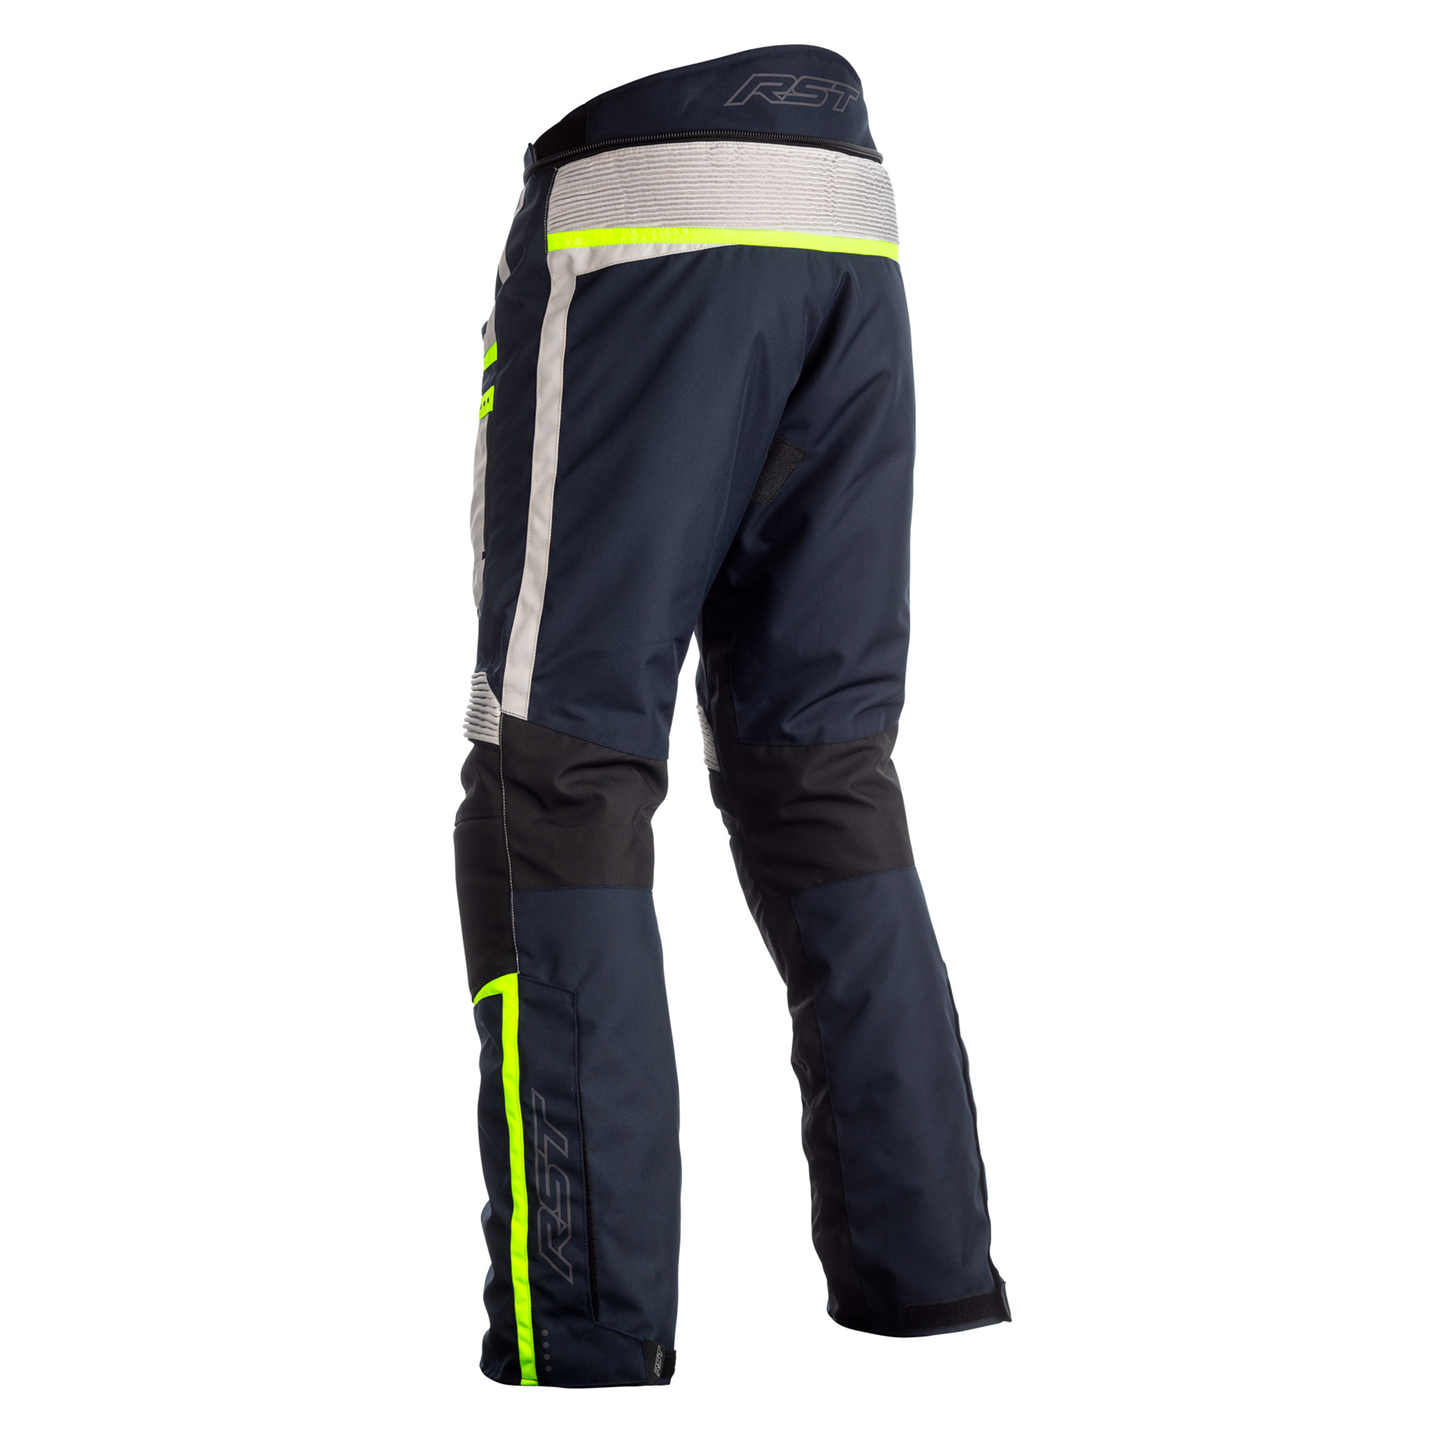 RST Maverick (CE) Ladies Textile - Regular Length - Jeans - Blue/Silver/Neon